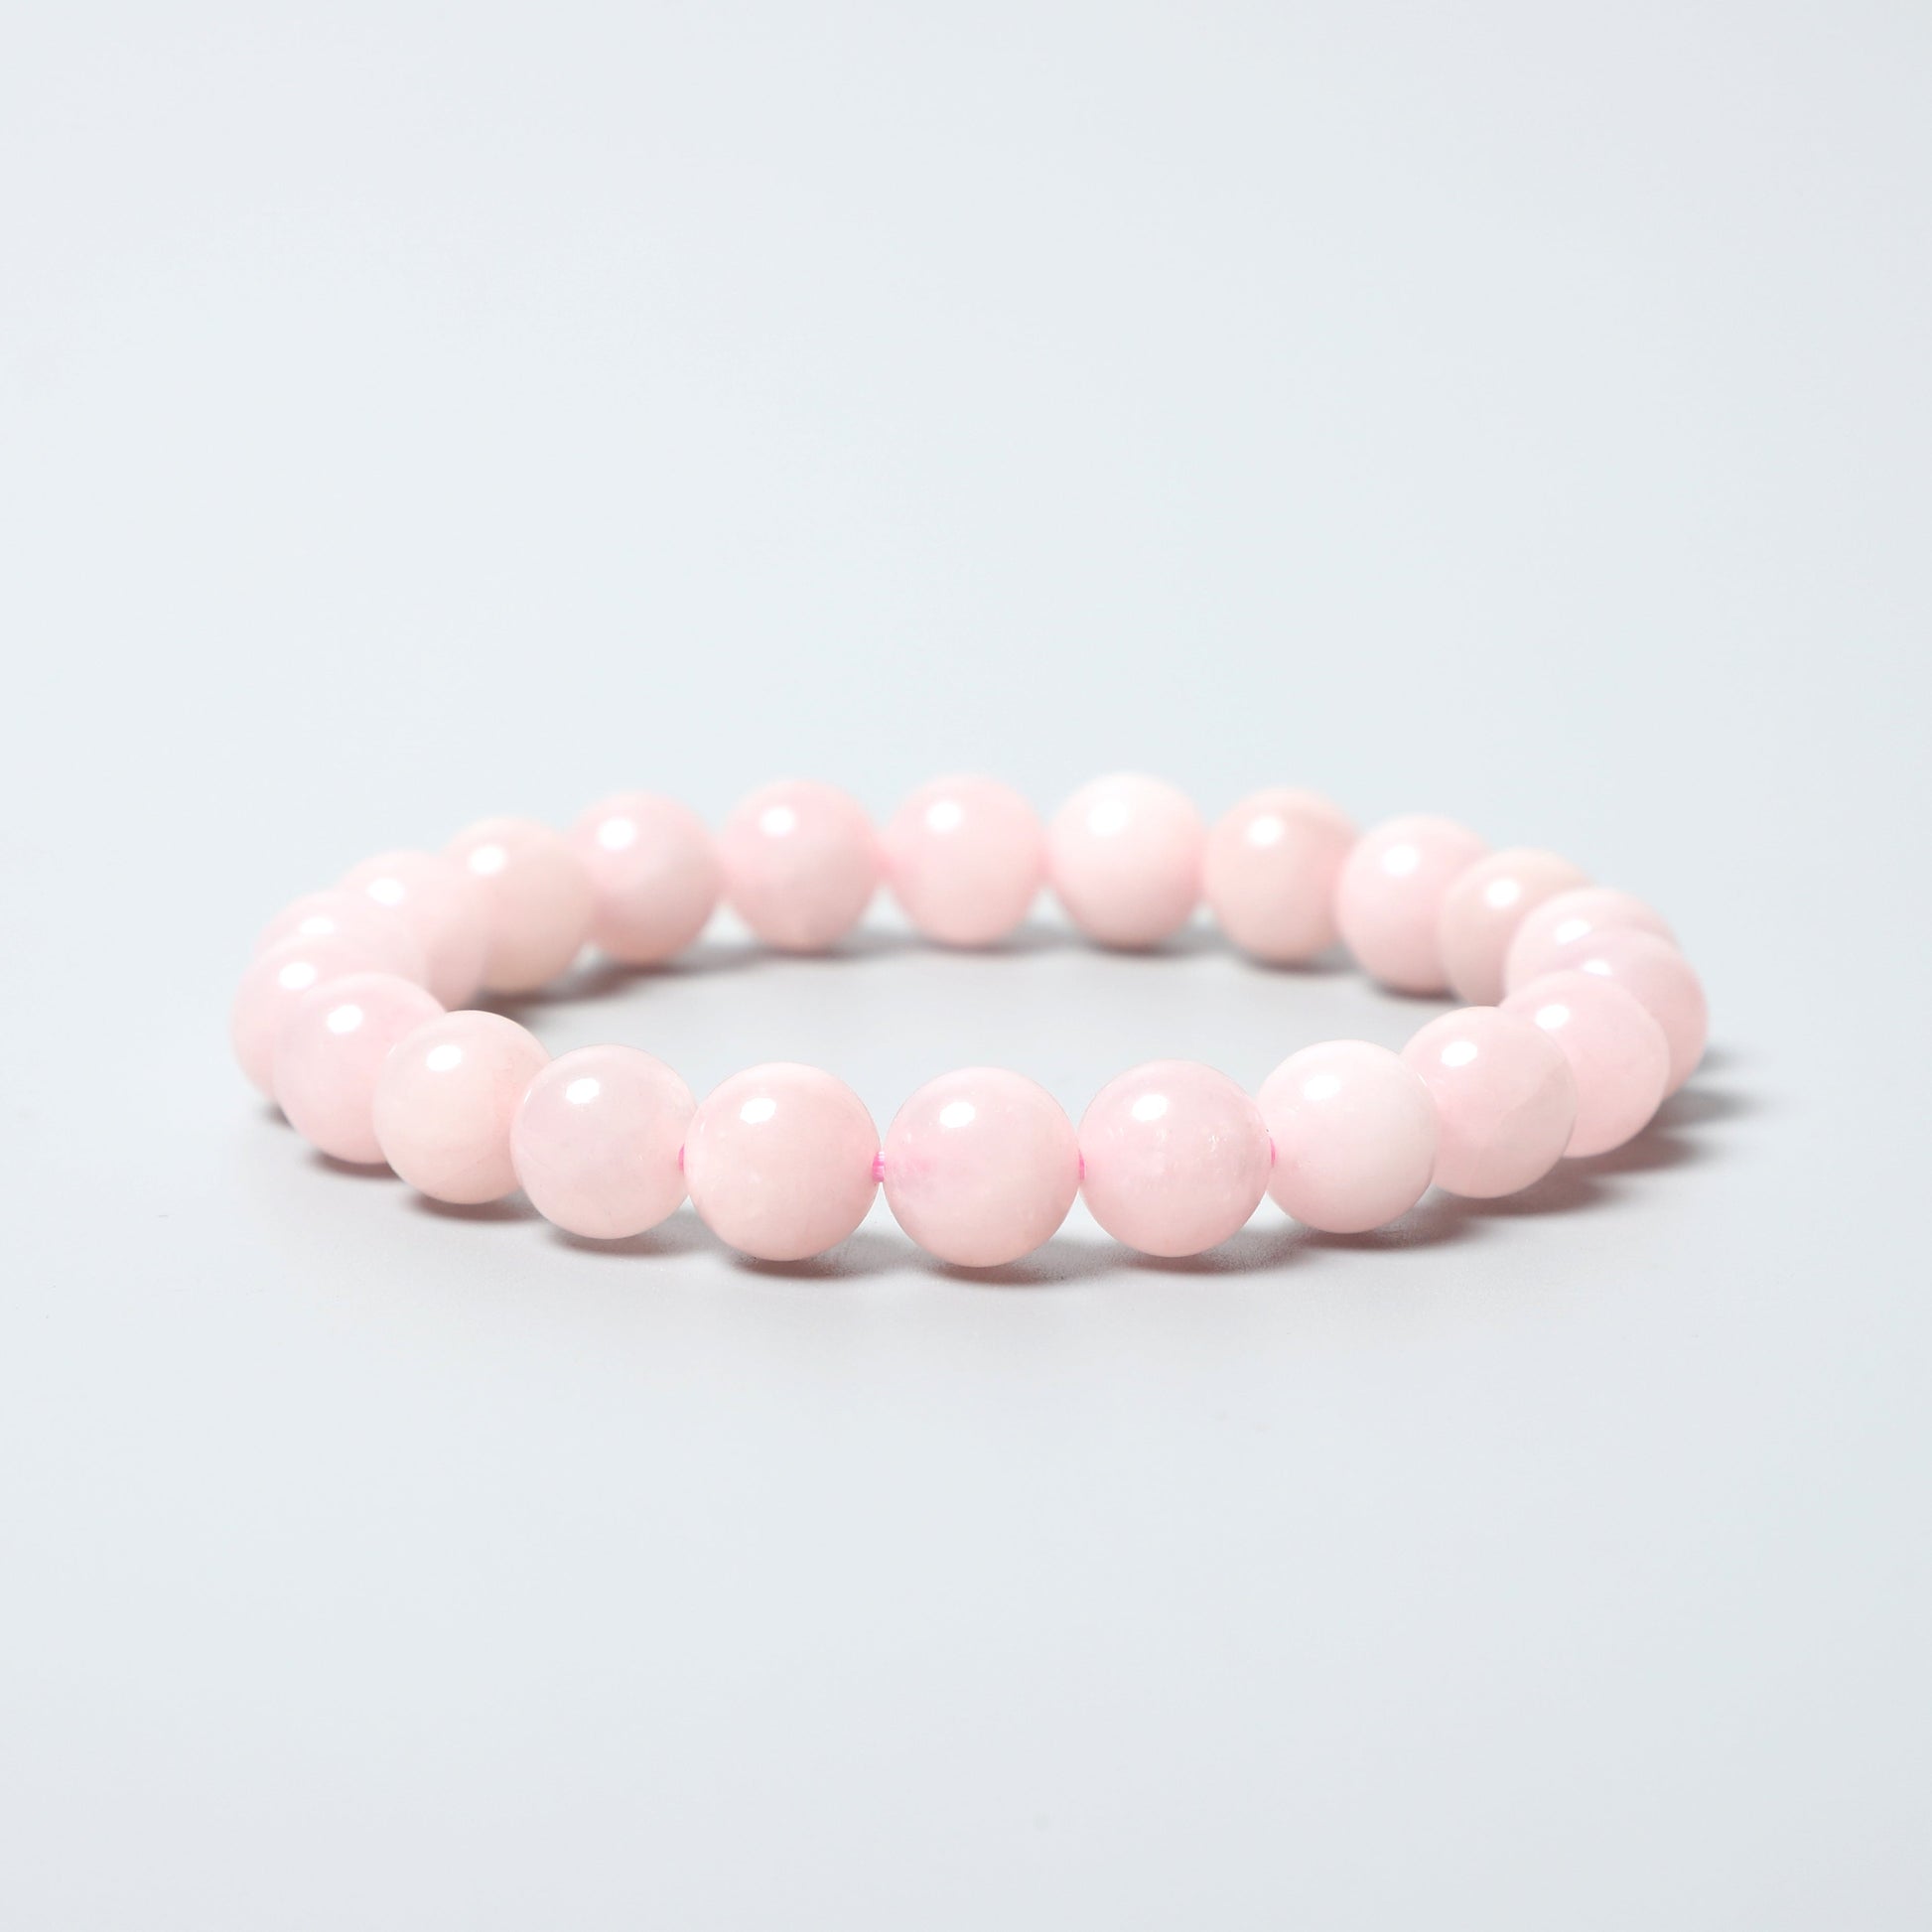 Rose quartz round beads Elastic bracelet ROLA DIRECT BUY